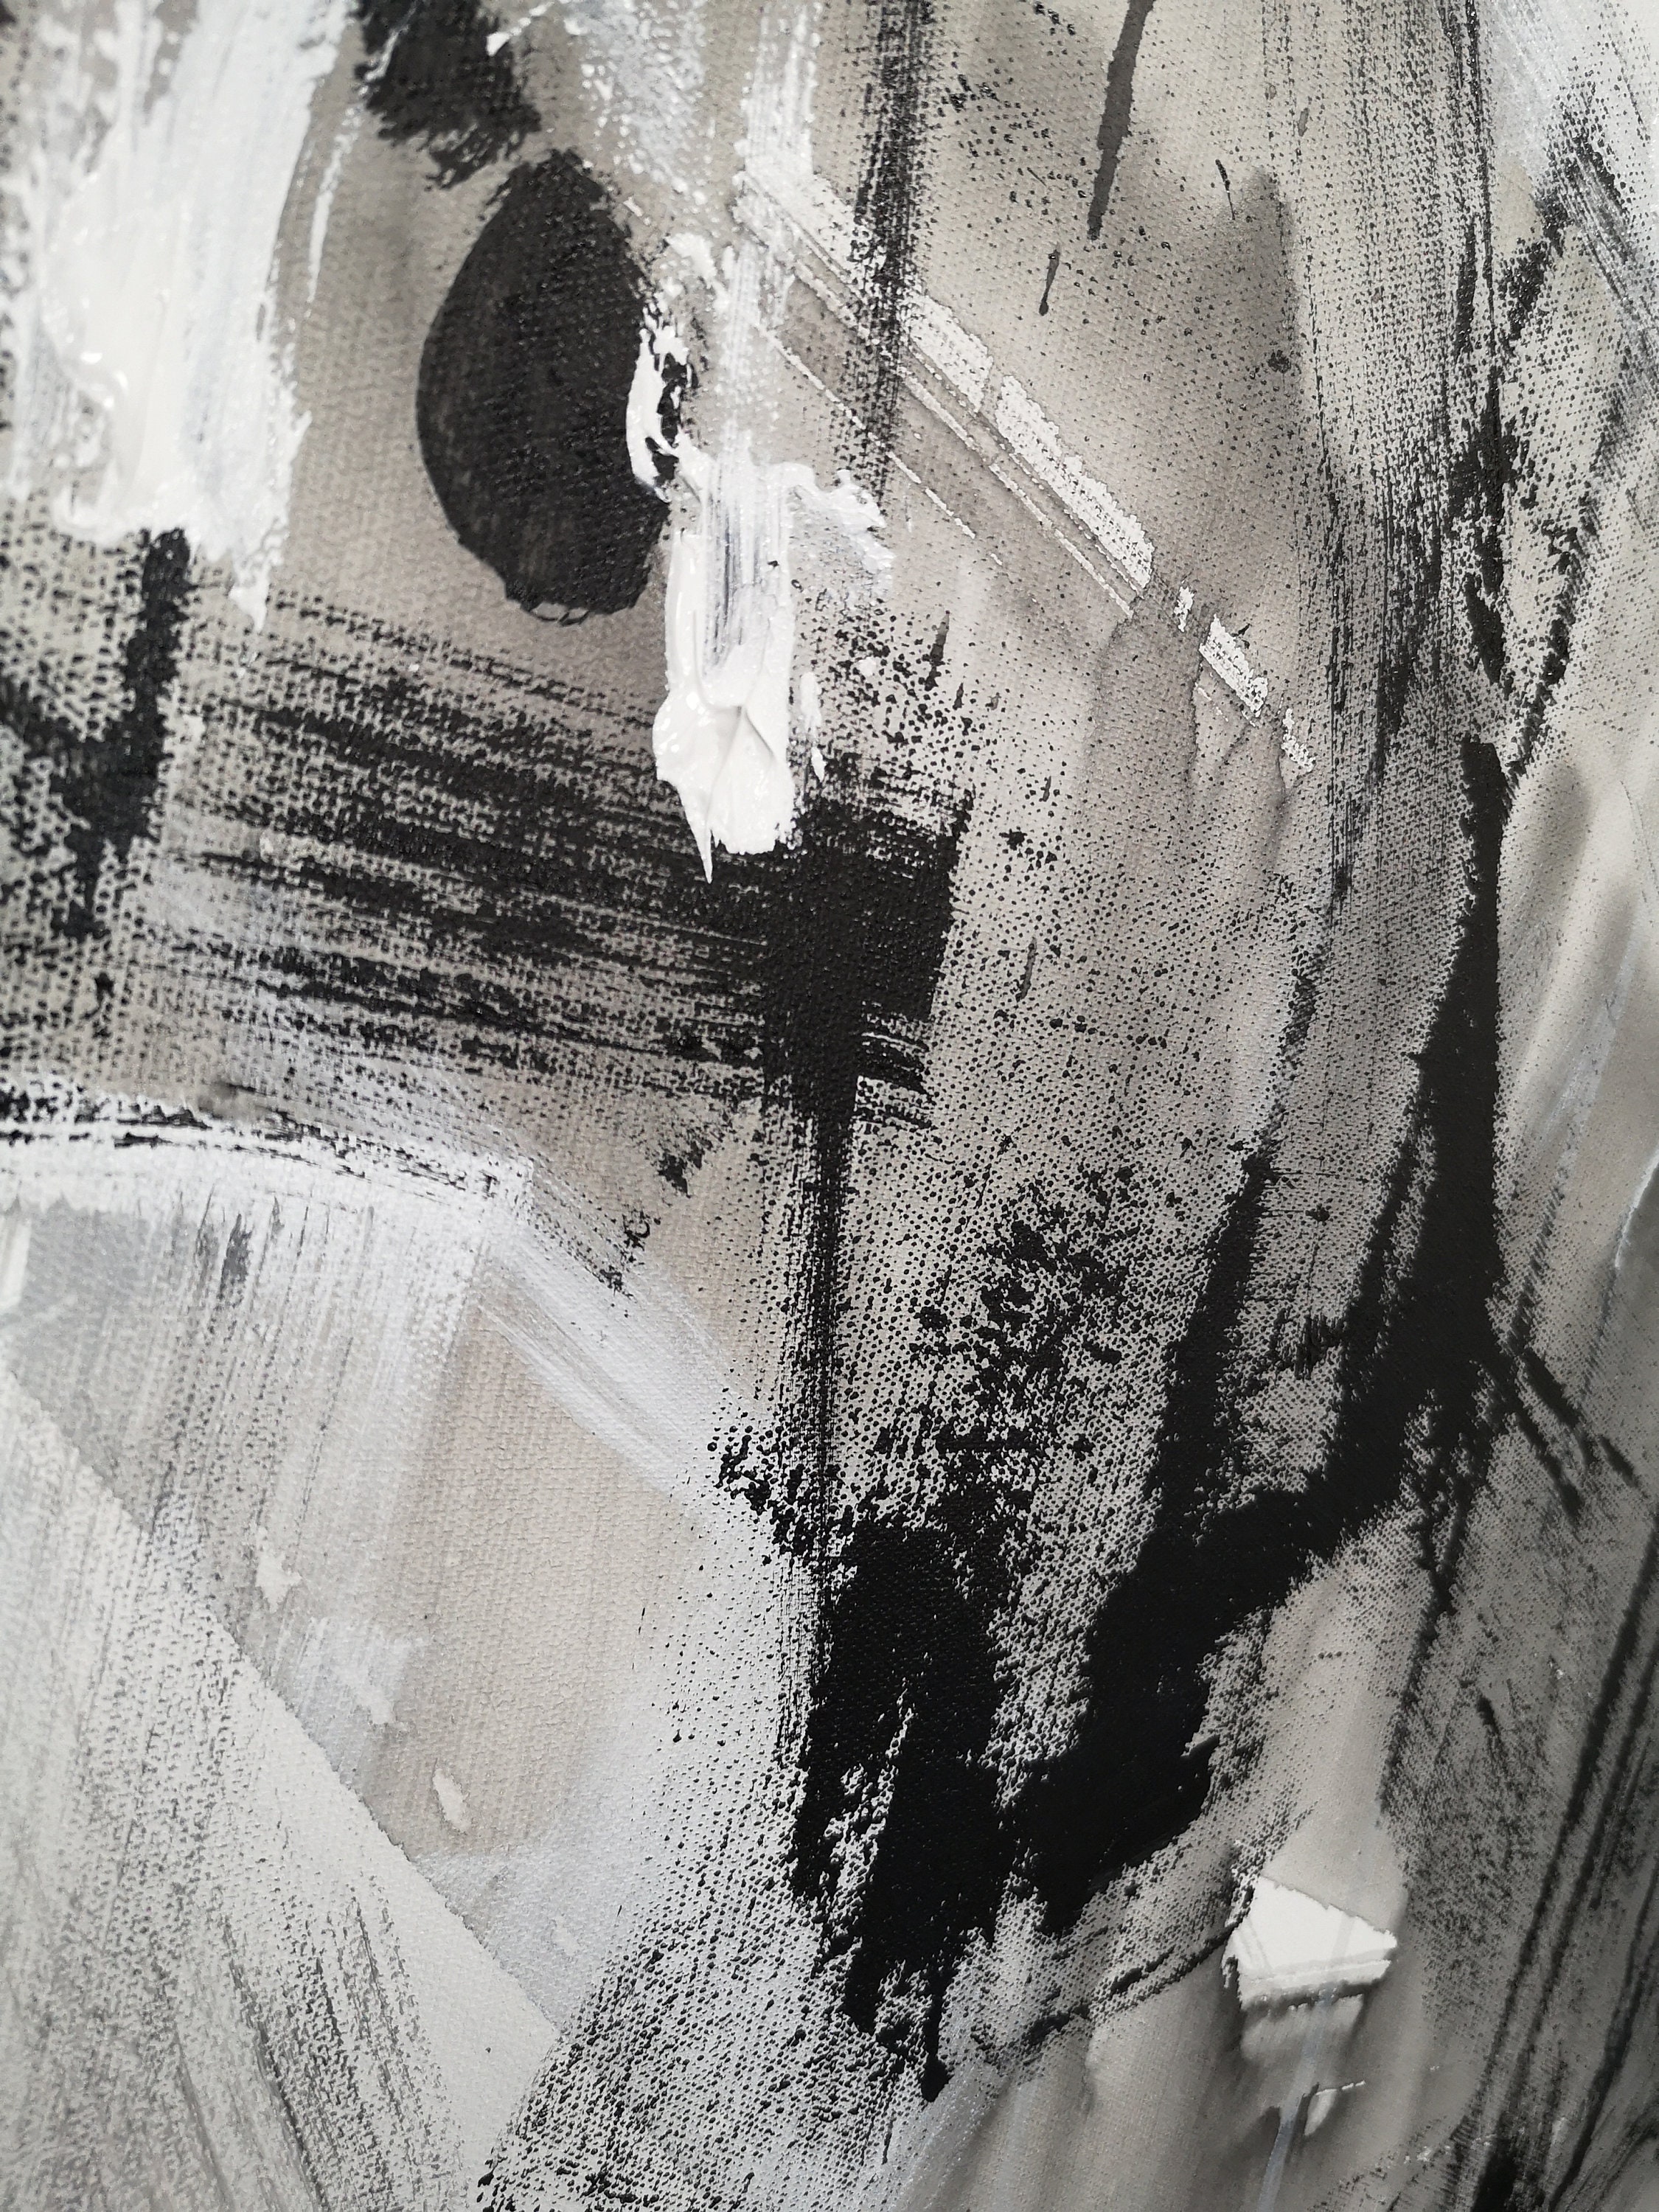 Schwarz Weiß Malerei Großes abstraktes Gemälde Landschaft | Etsy